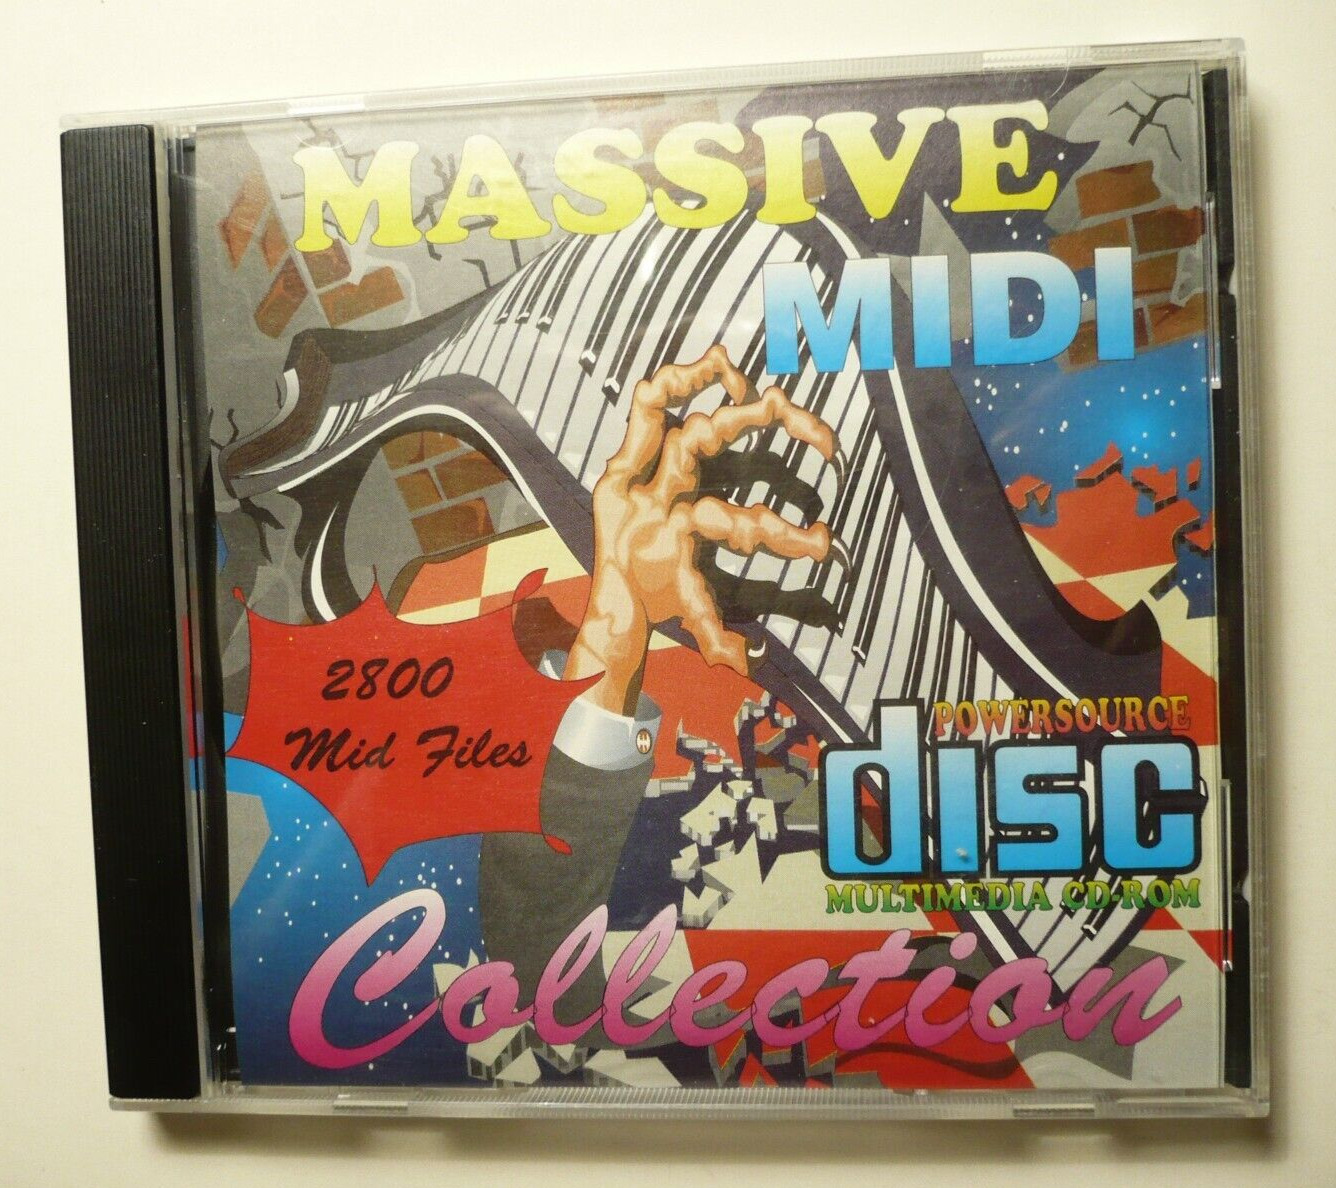 RARE, MASSIVE MIDI, 2800 Midi Files Collection, CD ROM Clean Used Copy w/ Insert